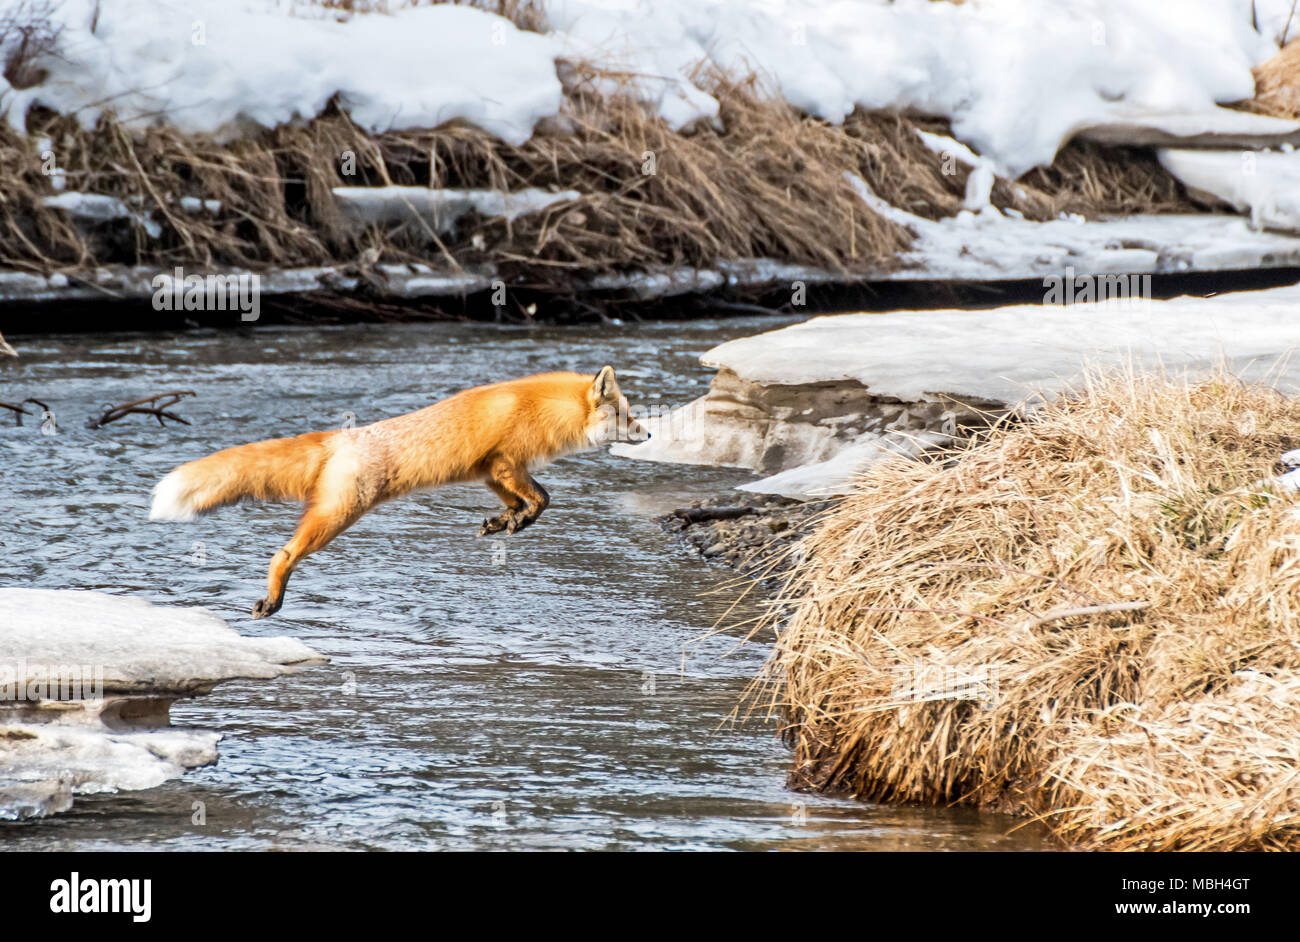 Un renard roux sautille à travers un ruisseau Banque D'Images